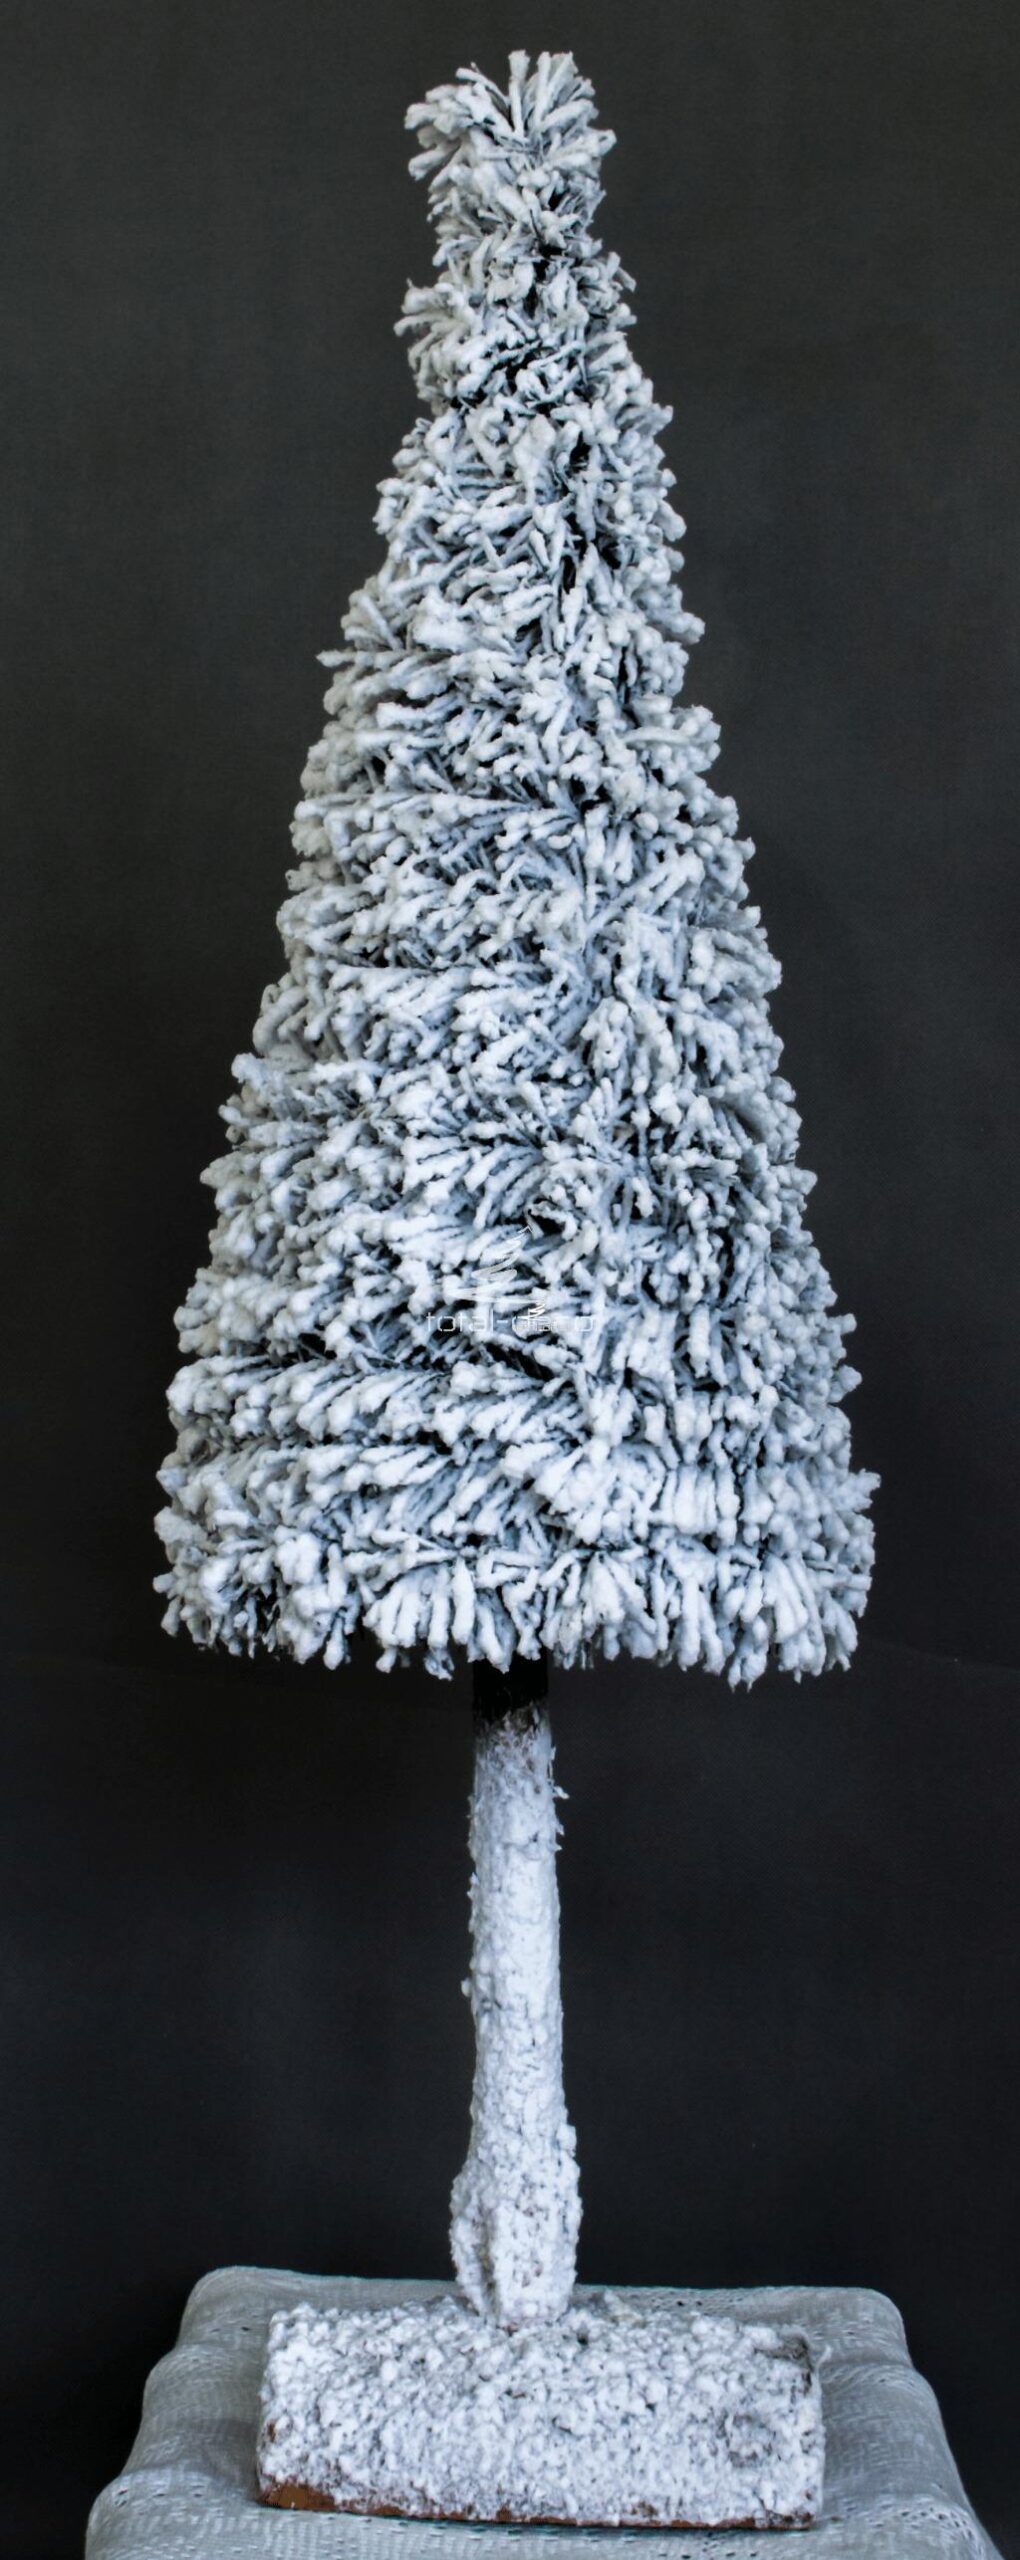 Biała choinka na pniu śnieżona oprószona śniegiem nowoczesna dekoracja bożonarodzeniowa świateczna oryginalna ozdoba